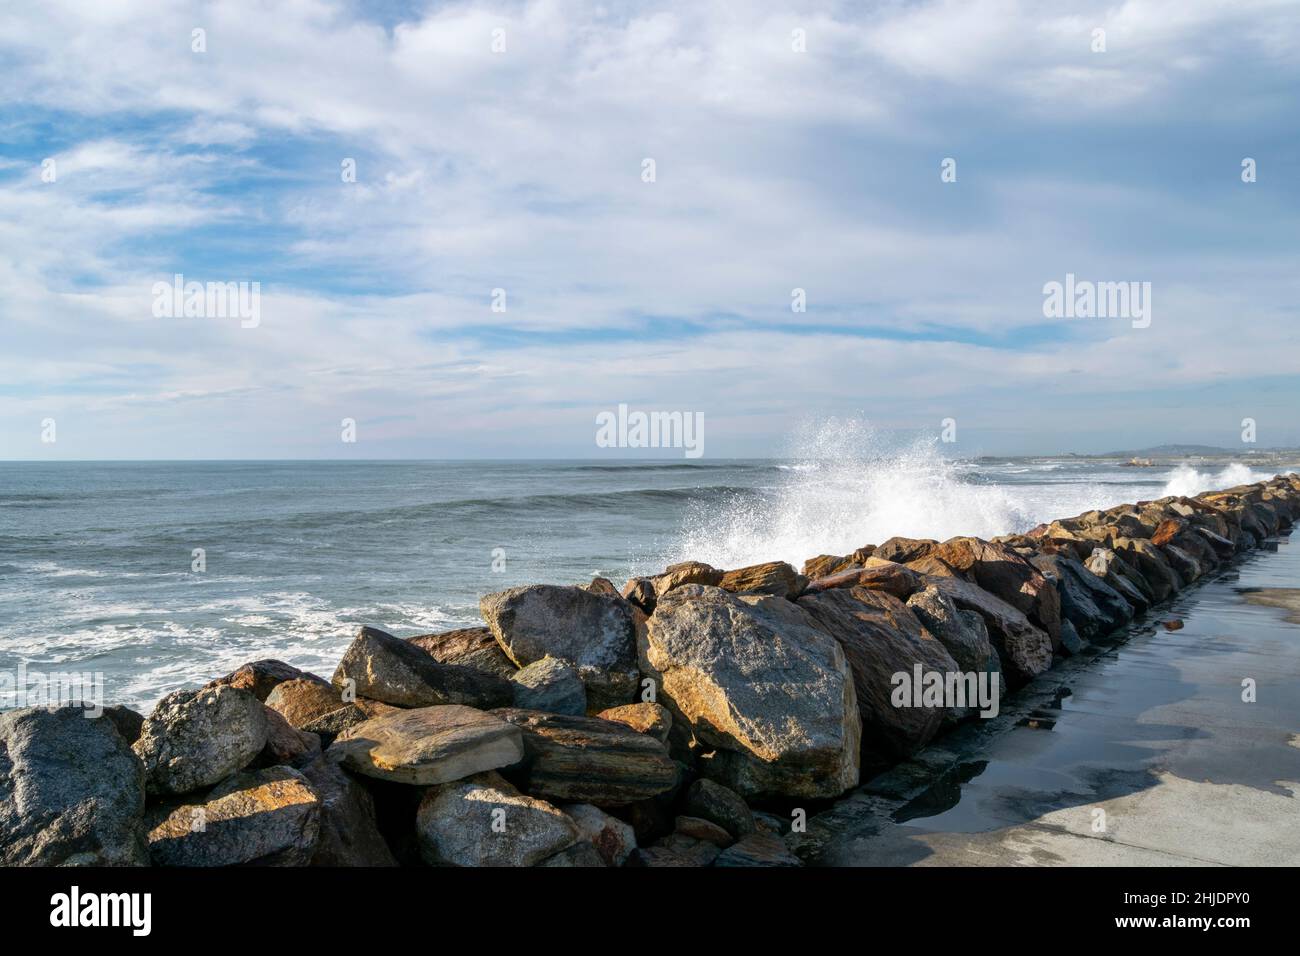 Felsbarrieren Reihen sich entlang des Strandsands zu einer Meereswand mit großen Felsen, die hoch mit blauem bewölktem Himmel im Hintergrund gestapelt sind. Stockfoto